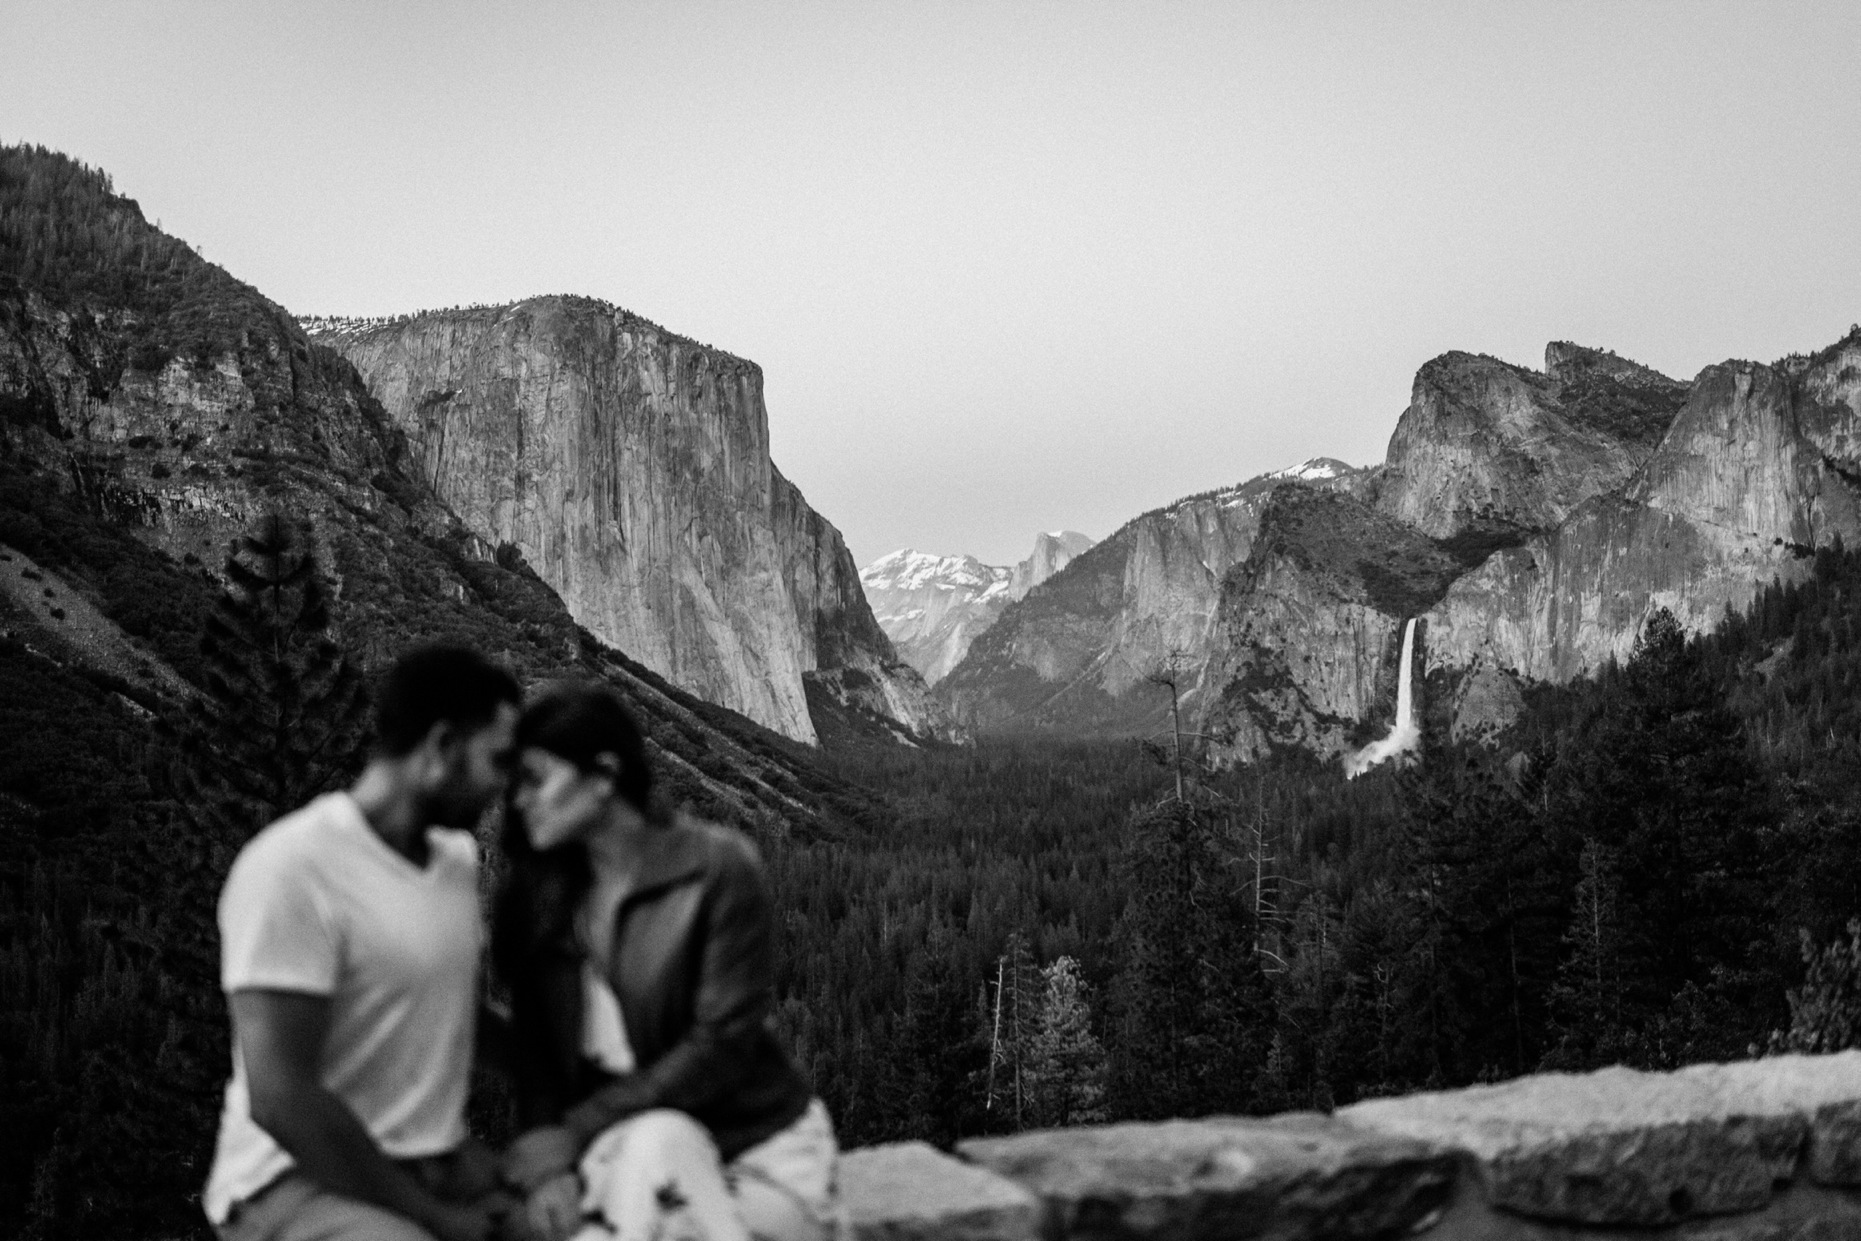 Couple with Yosemite Vista in B&W